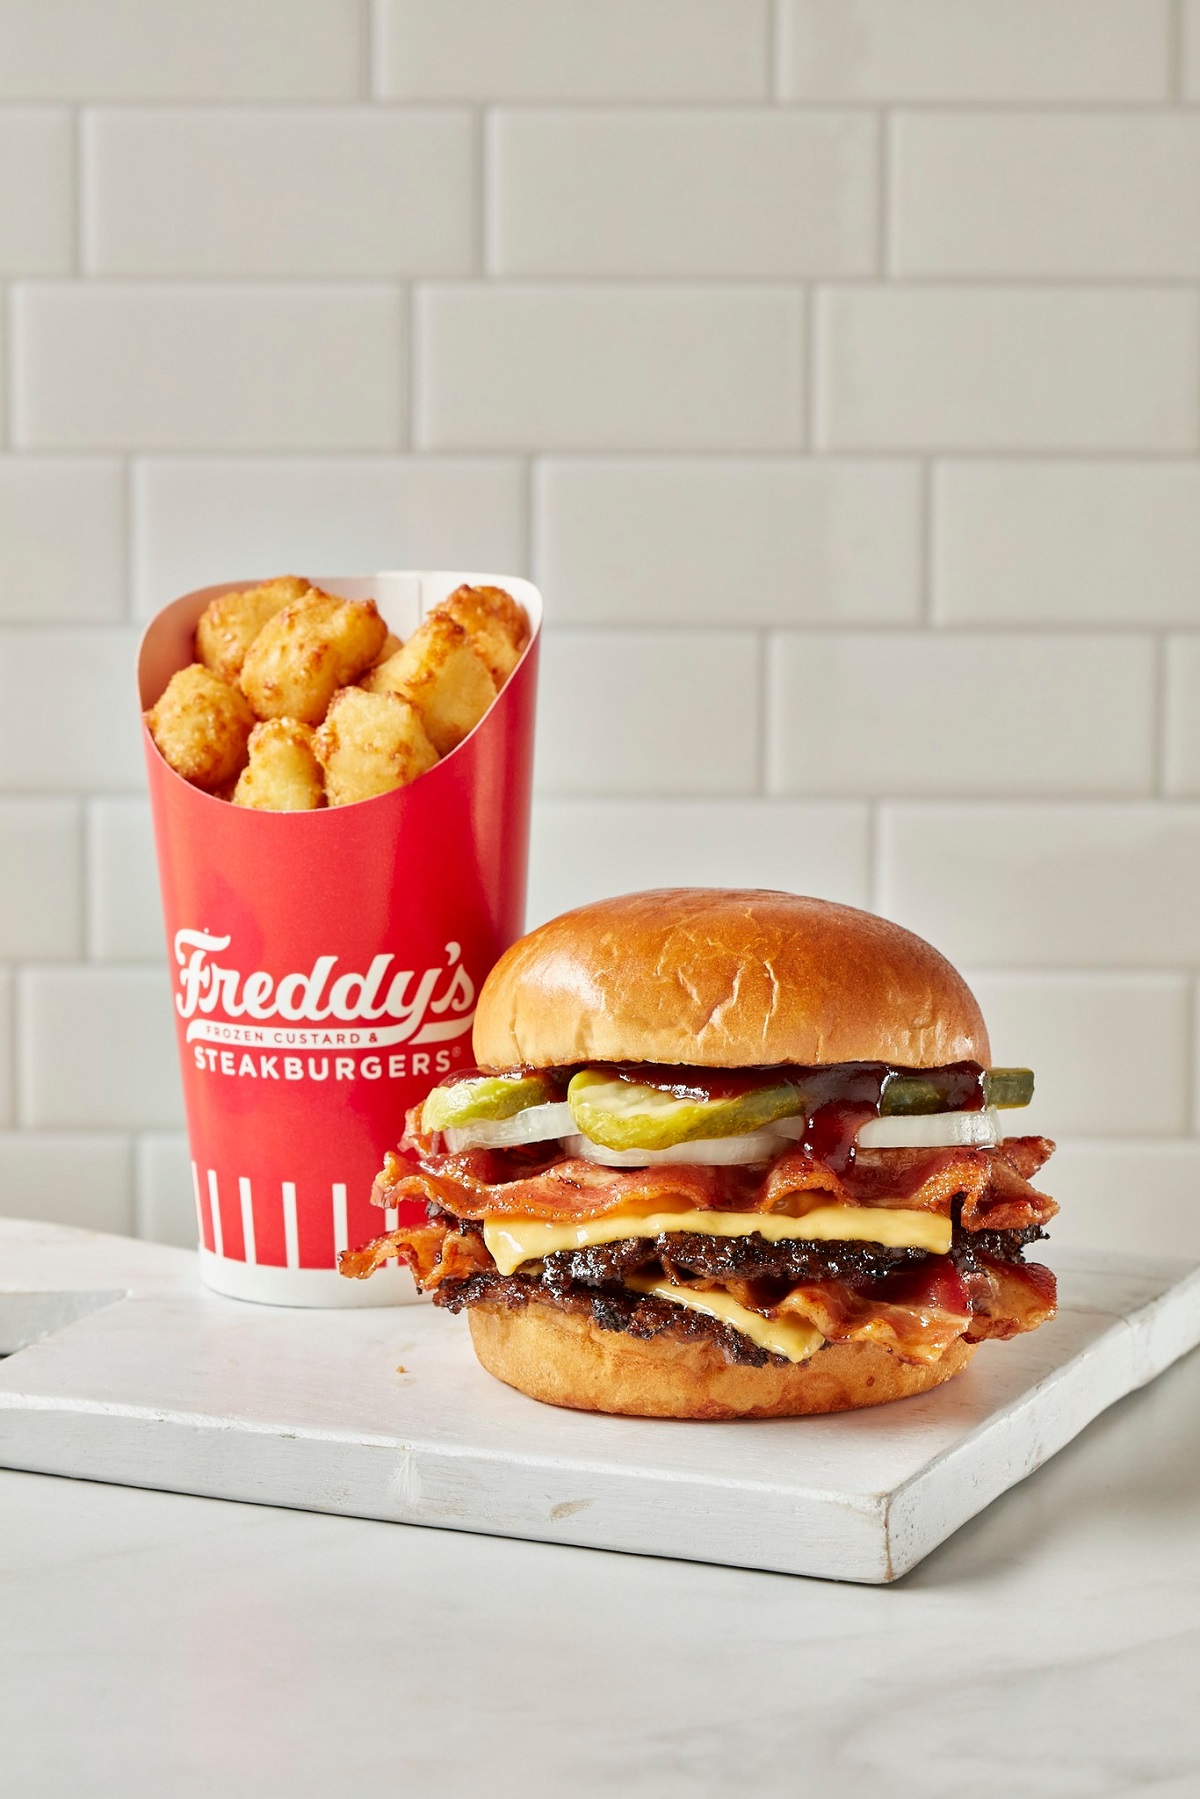 Freddy's Frozen Custard & Steakburgers to open in Burleson TX